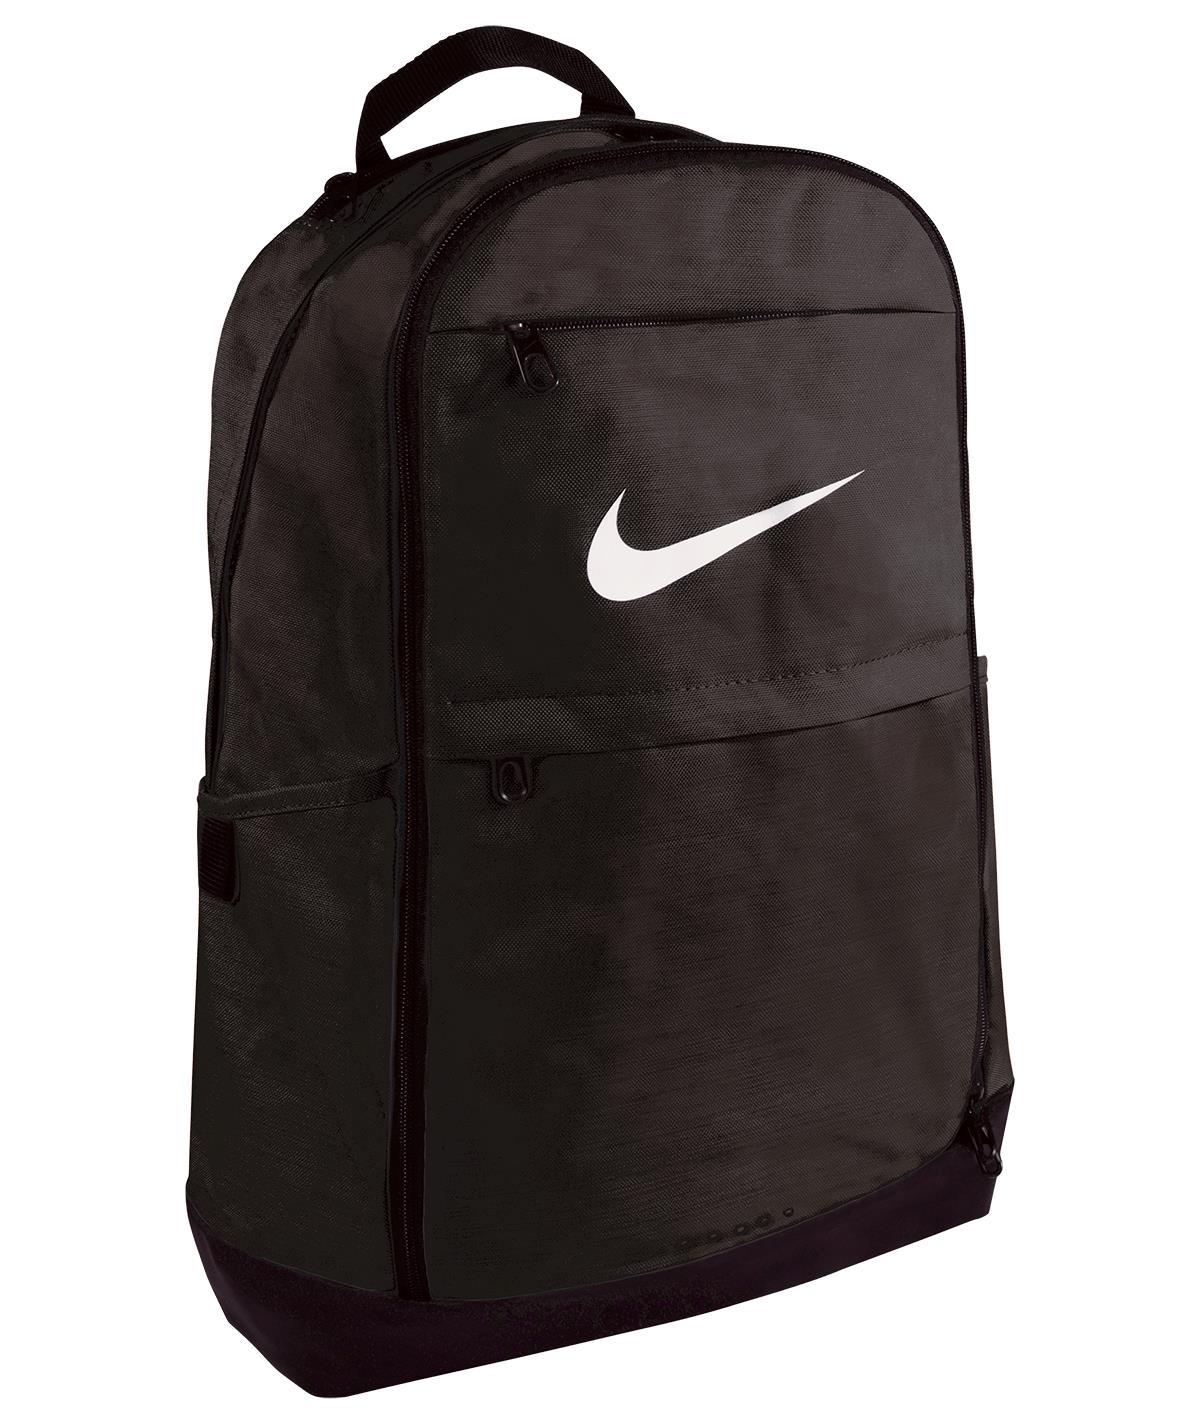 backpack nike brasilia